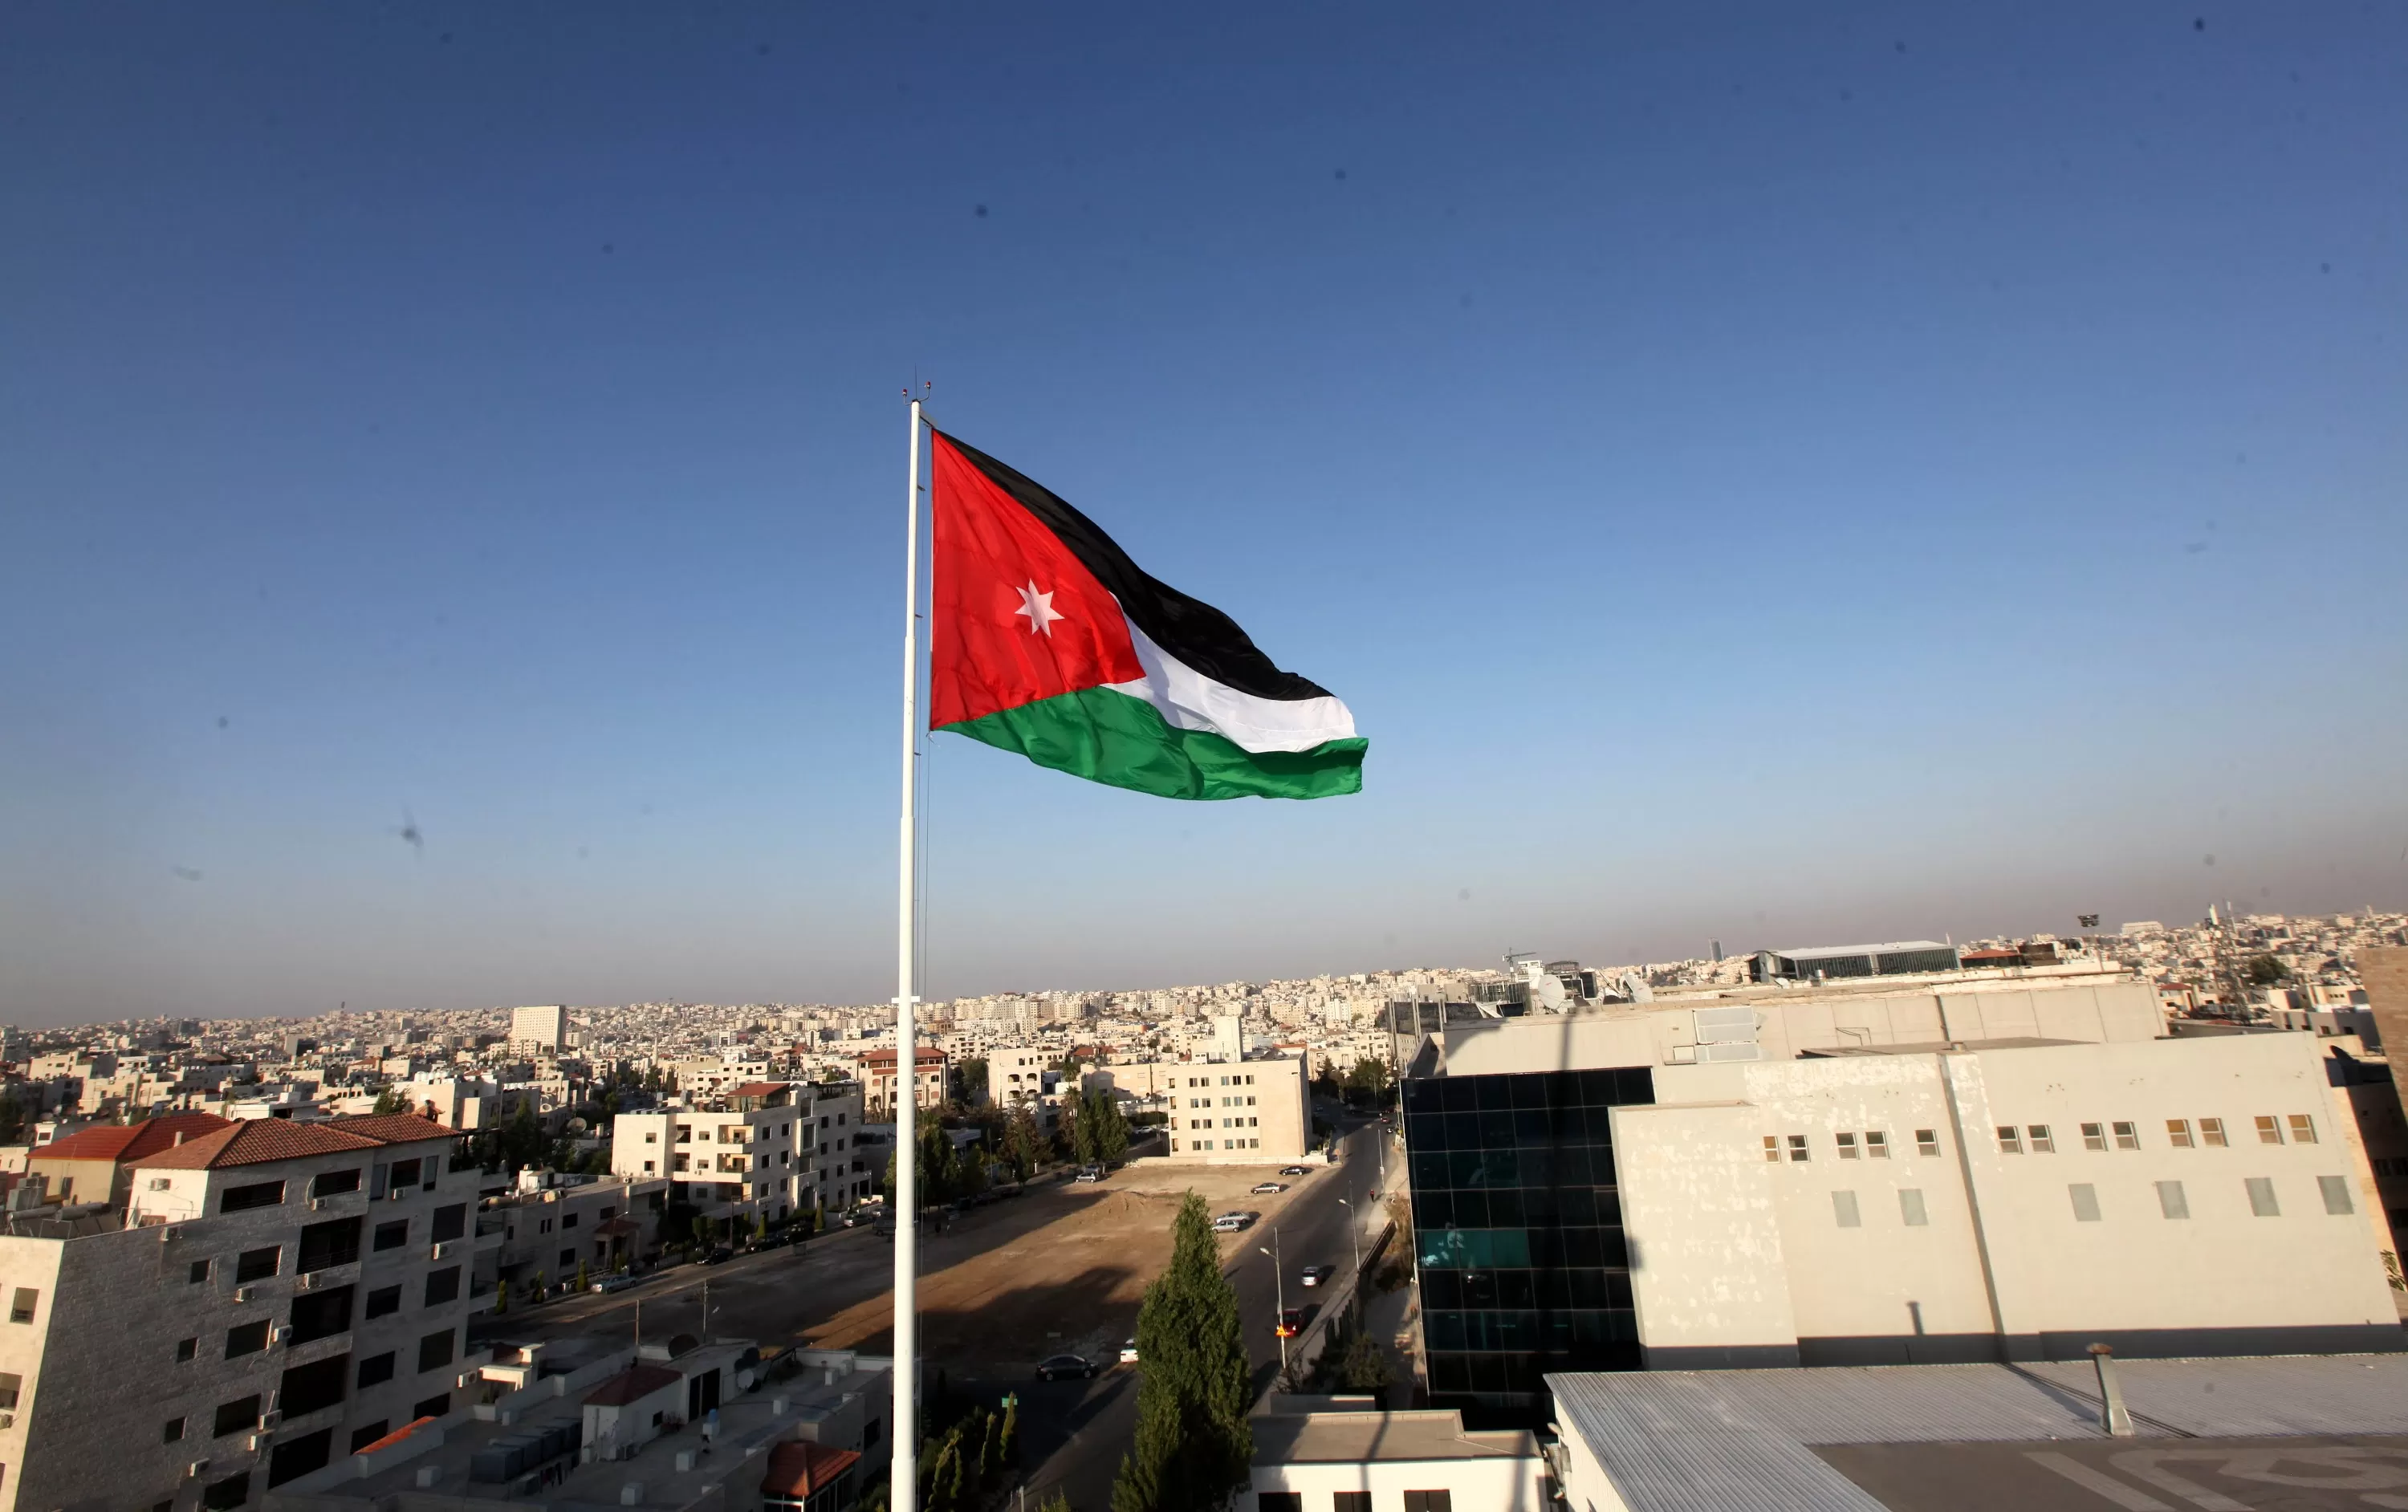 مدار الساعة,أخبار الأردن,اخبار الاردن,وكالة الأنباء الأردنية,الملك عبد الله الثاني,العمليات الخاصة